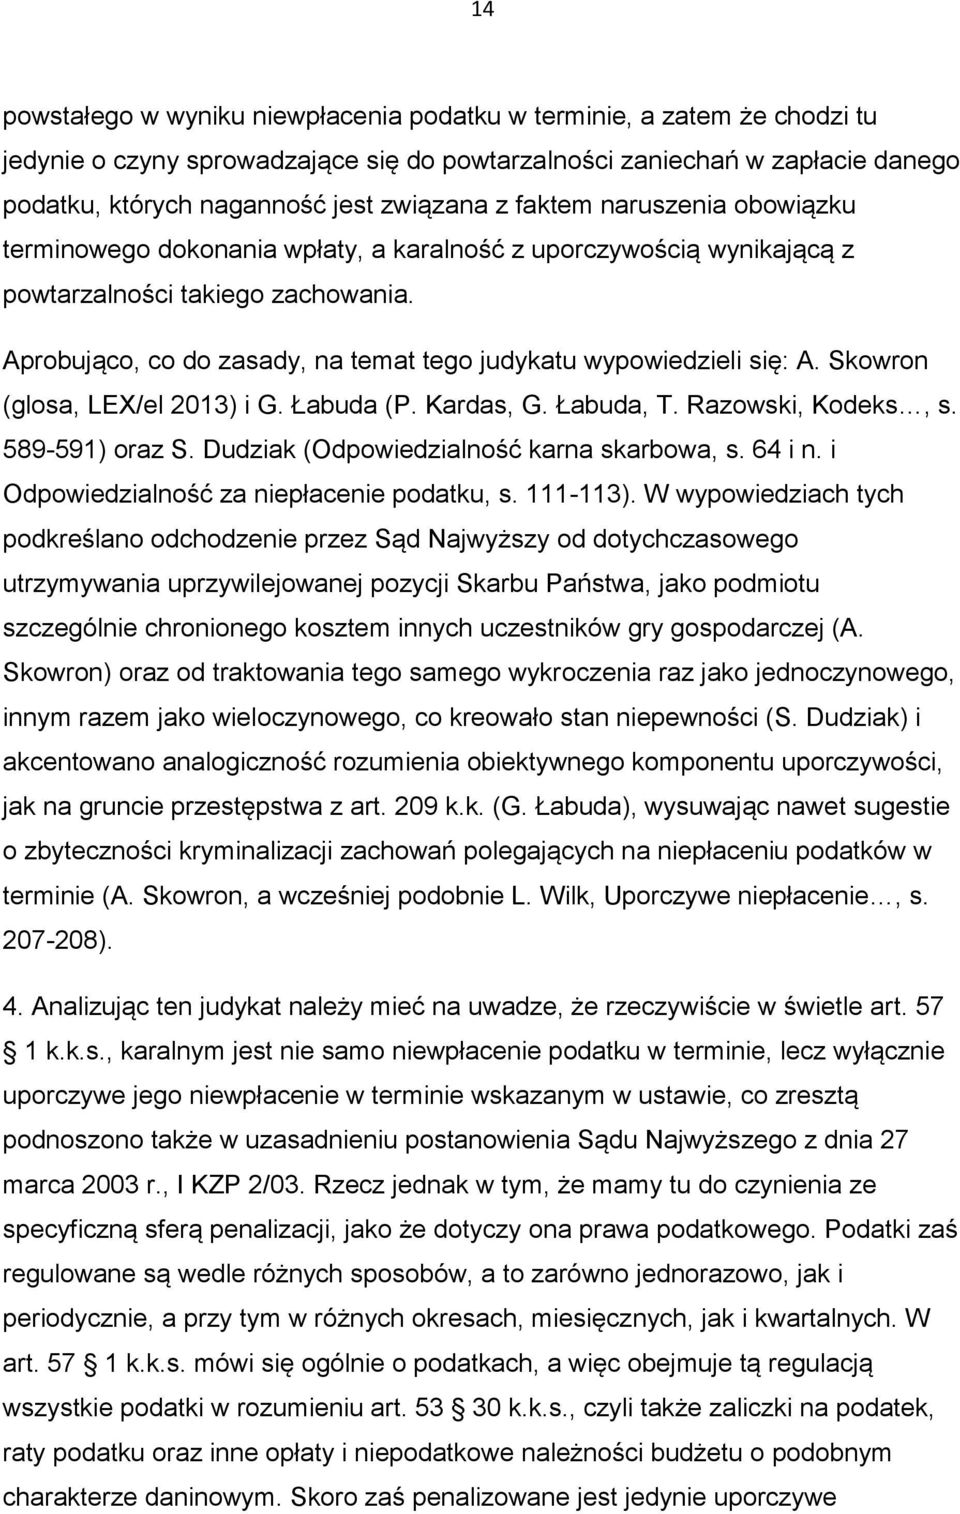 Aprobująco, co do zasady, na temat tego judykatu wypowiedzieli się: A. Skowron (glosa, LEX/el 2013) i G. Łabuda (P. Kardas, G. Łabuda, T. Razowski, Kodeks, s. 589-591) oraz S.